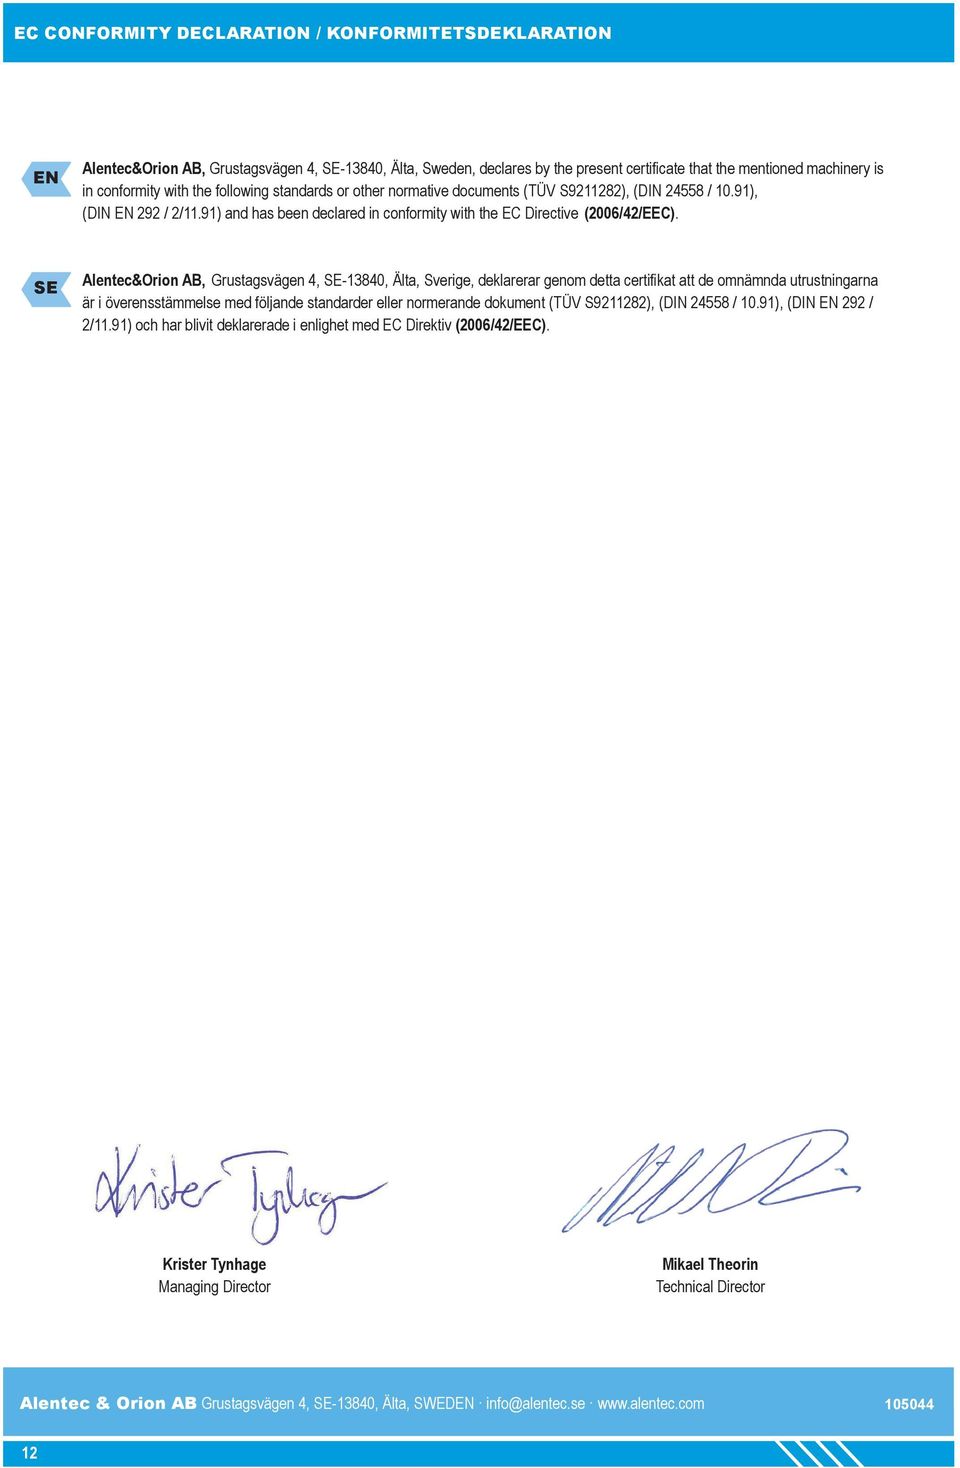 Alentec&Orion AB, Grustagsvägen 4, -13840, Älta, Sverige, deklarerar genom detta certifikat att de omnämnda utrustningarna är i överensstämmelse med följande standarder eller normerande dokument